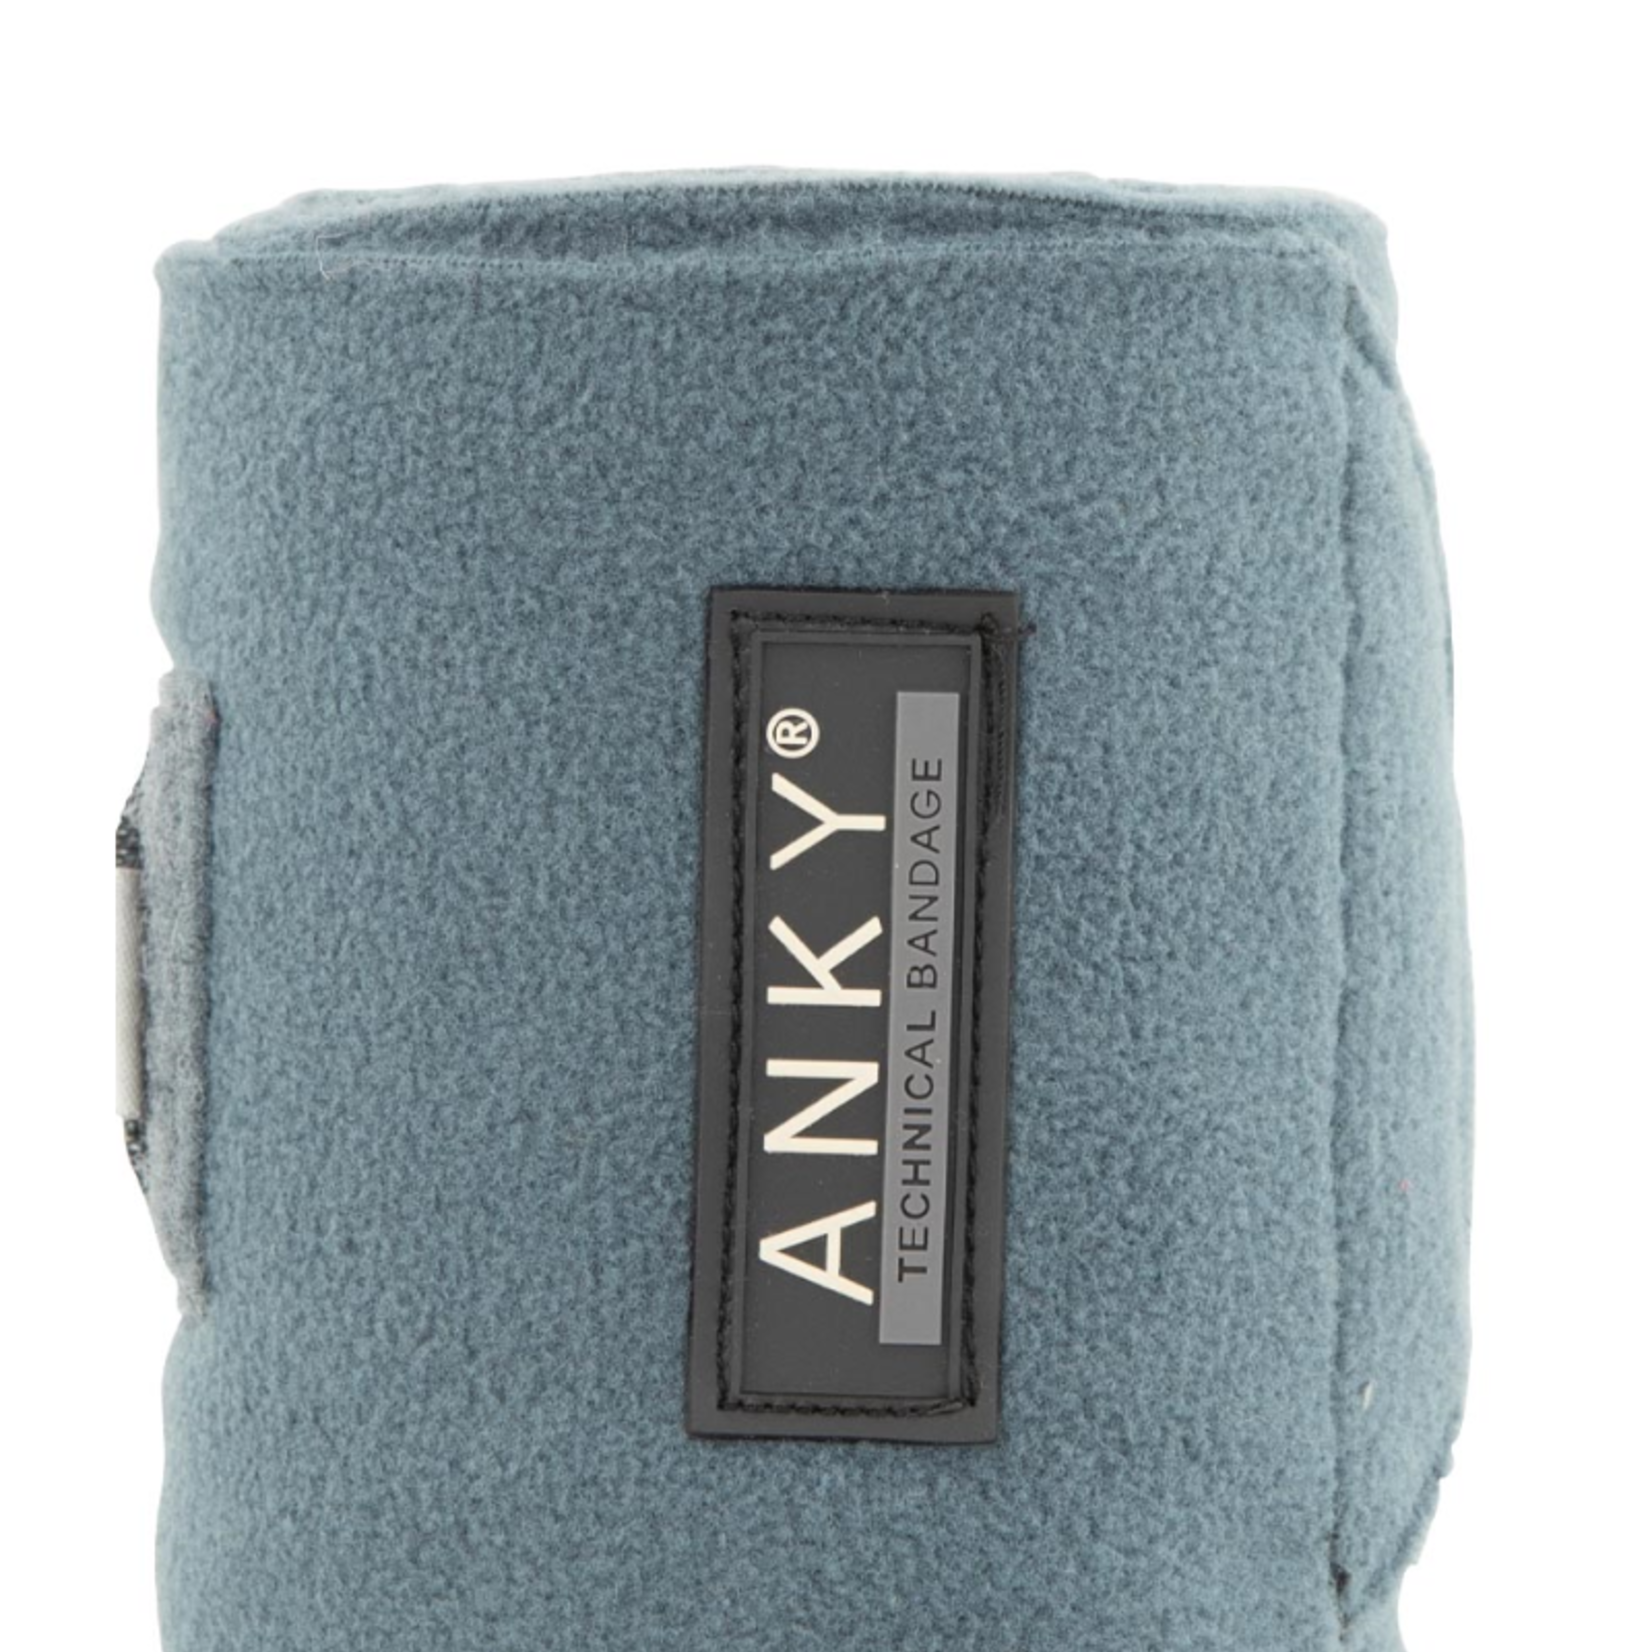 Anky Anky Fleece Bandages A30322